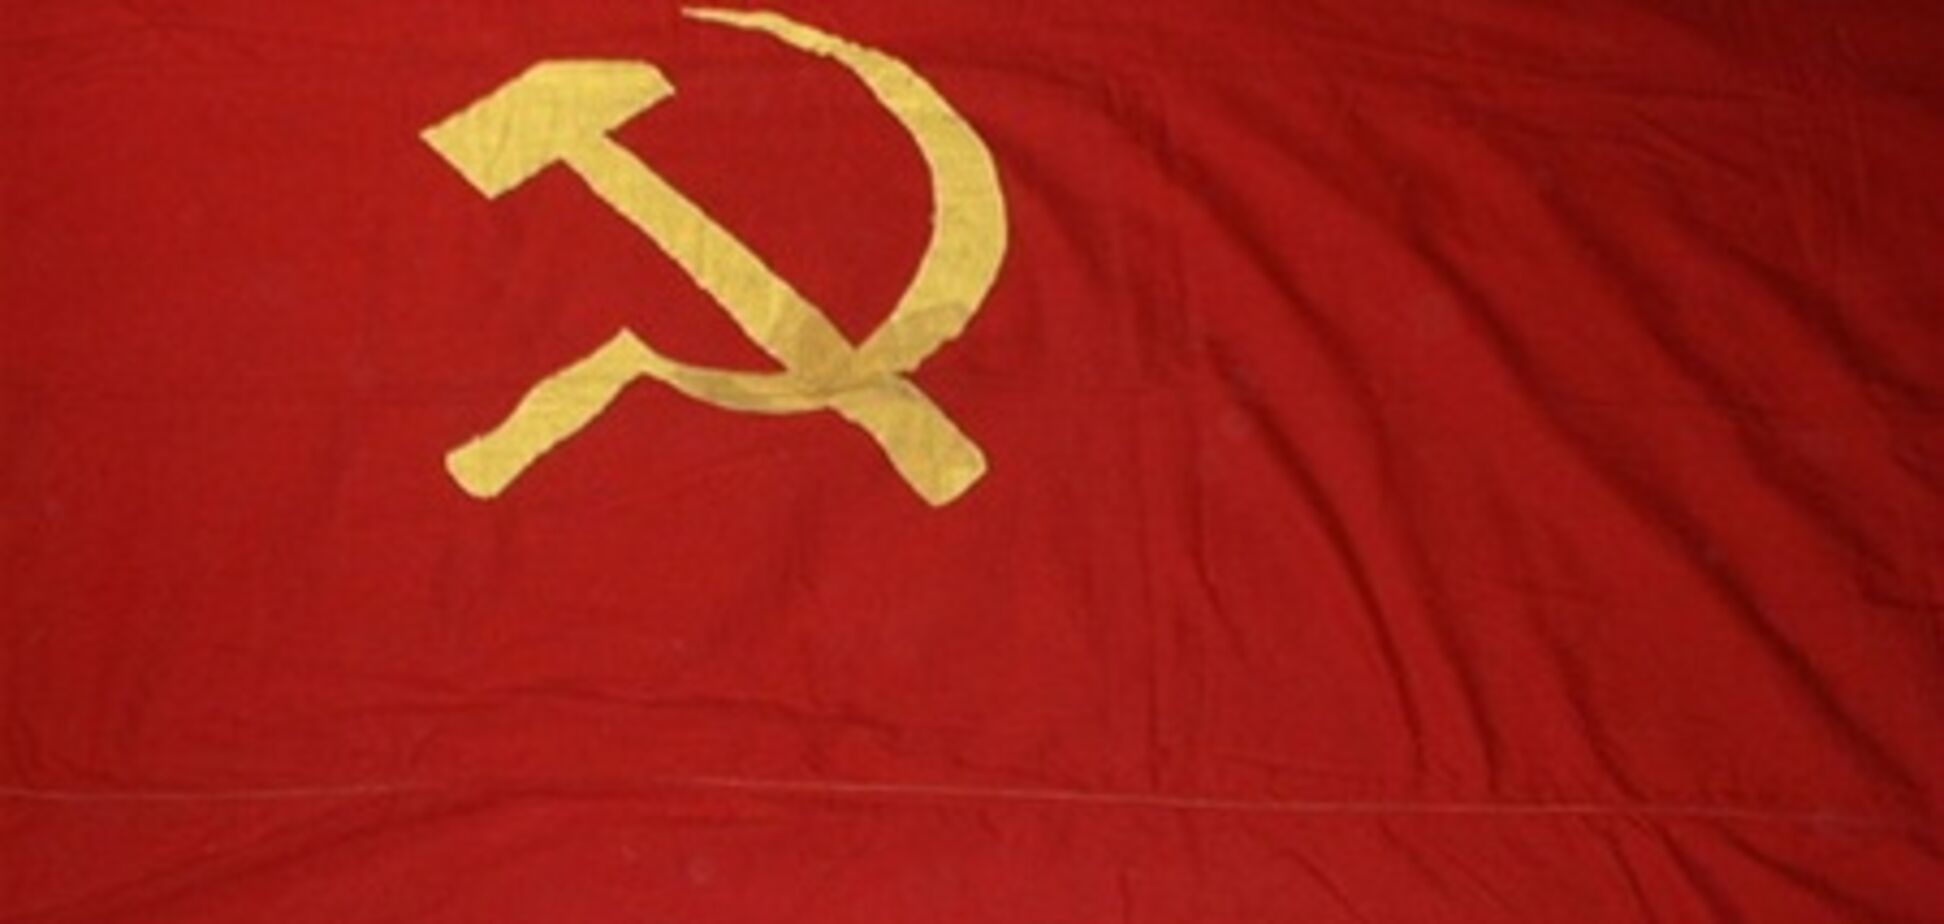 Во Львове запретили вывешивать флаг СССР на День победы